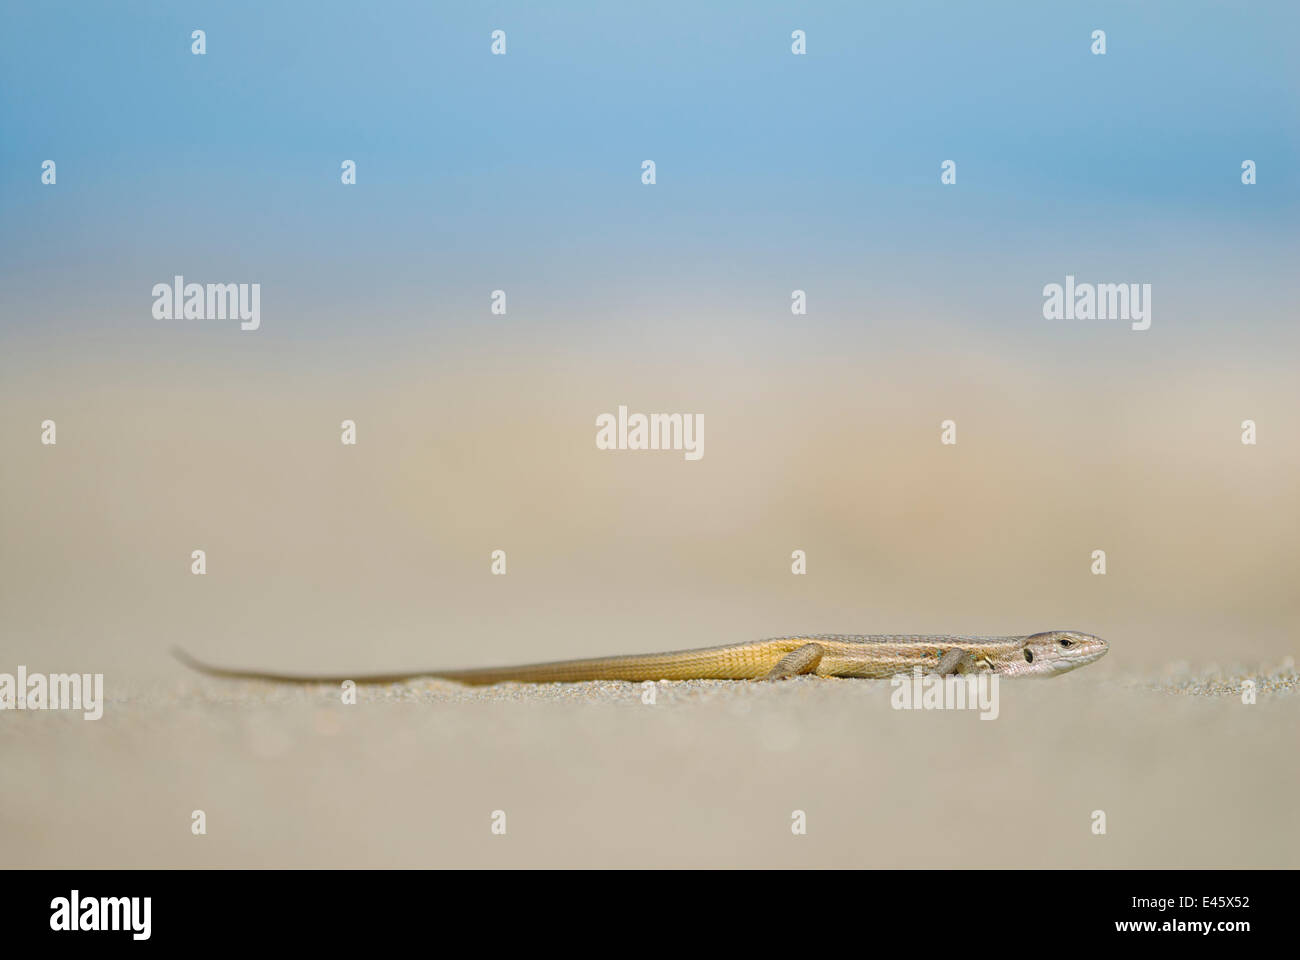 Großes Psammodromus Eidechse (Psammodromus Algirus) gegen Sand. Ebro Delta, Spanien. Stockfoto